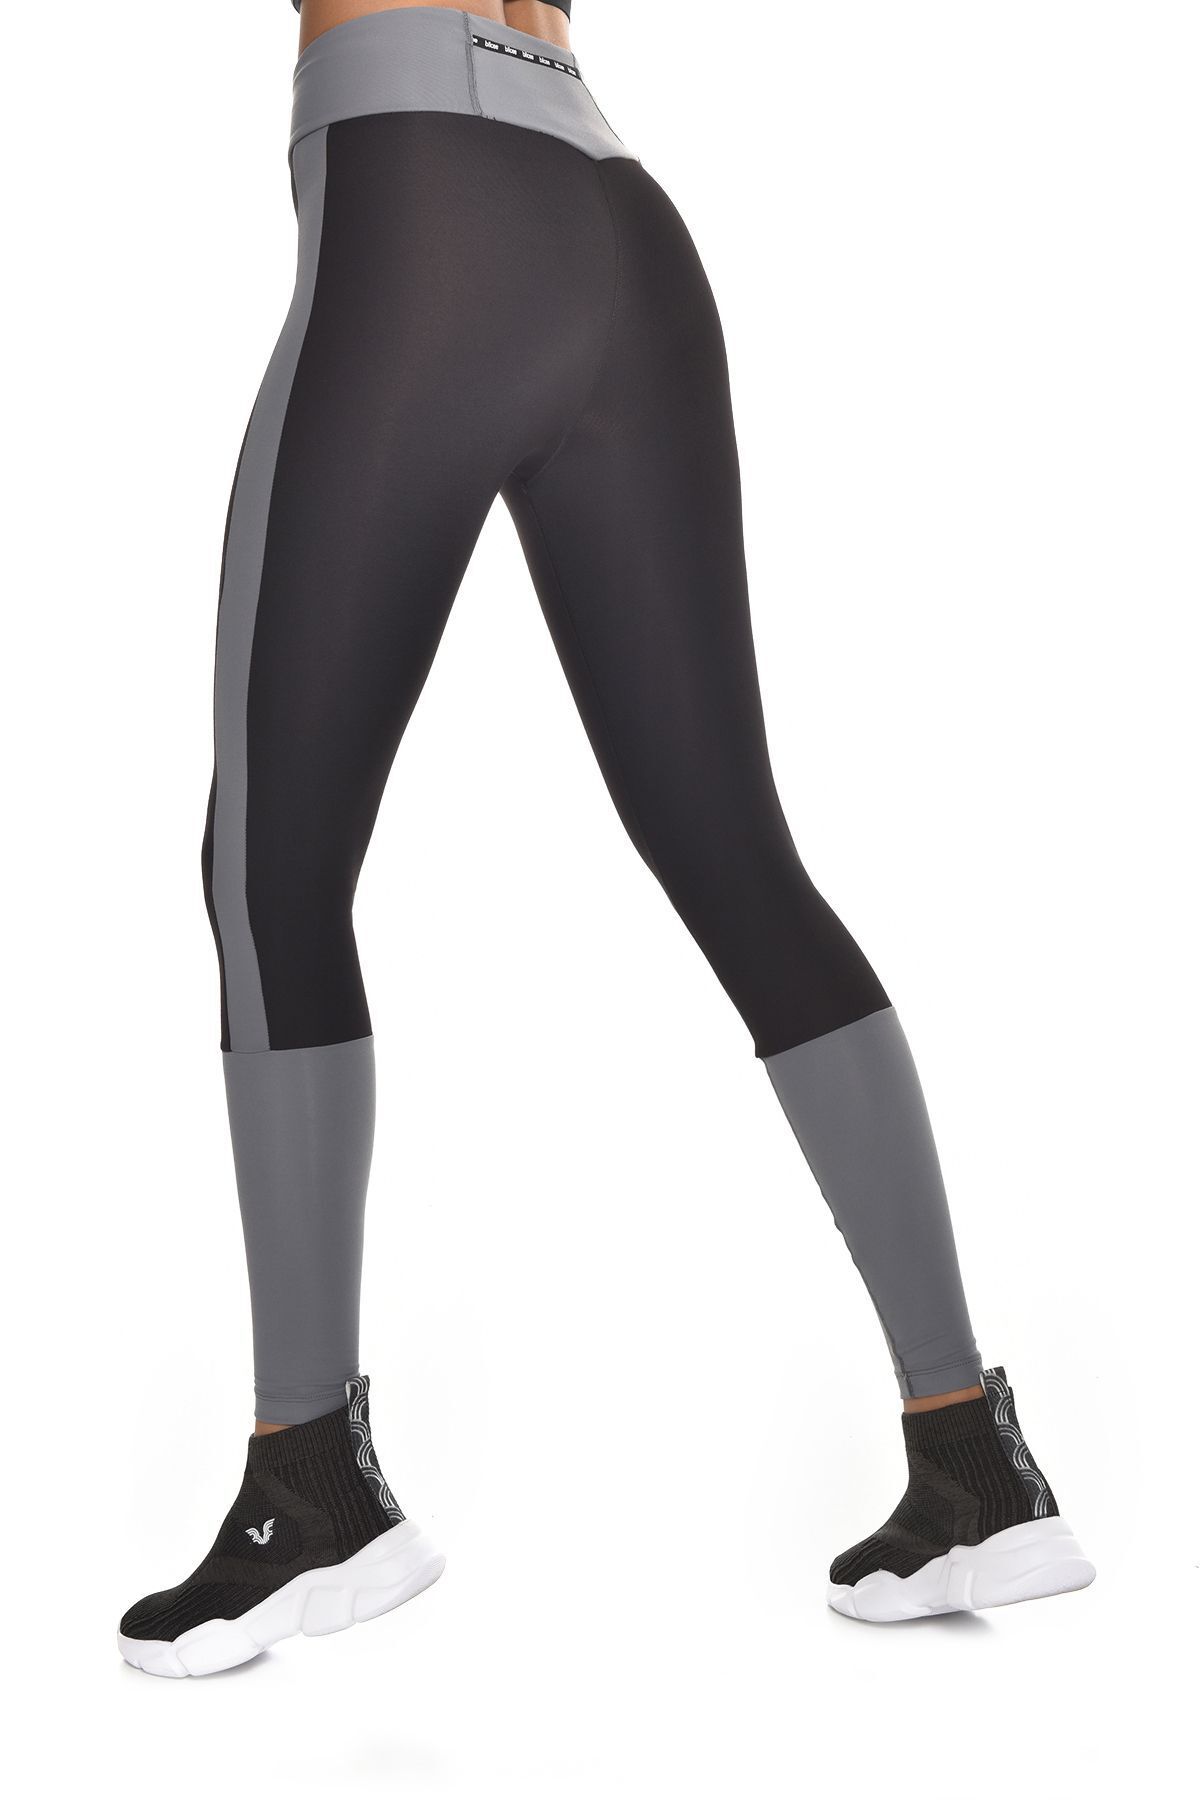 bilcee Kadın Siyah Yüksek Bel Şerit Detaylı Esnek Ve Toparlayıcı Günlük Koşu Yoga Spor Tayt 9202